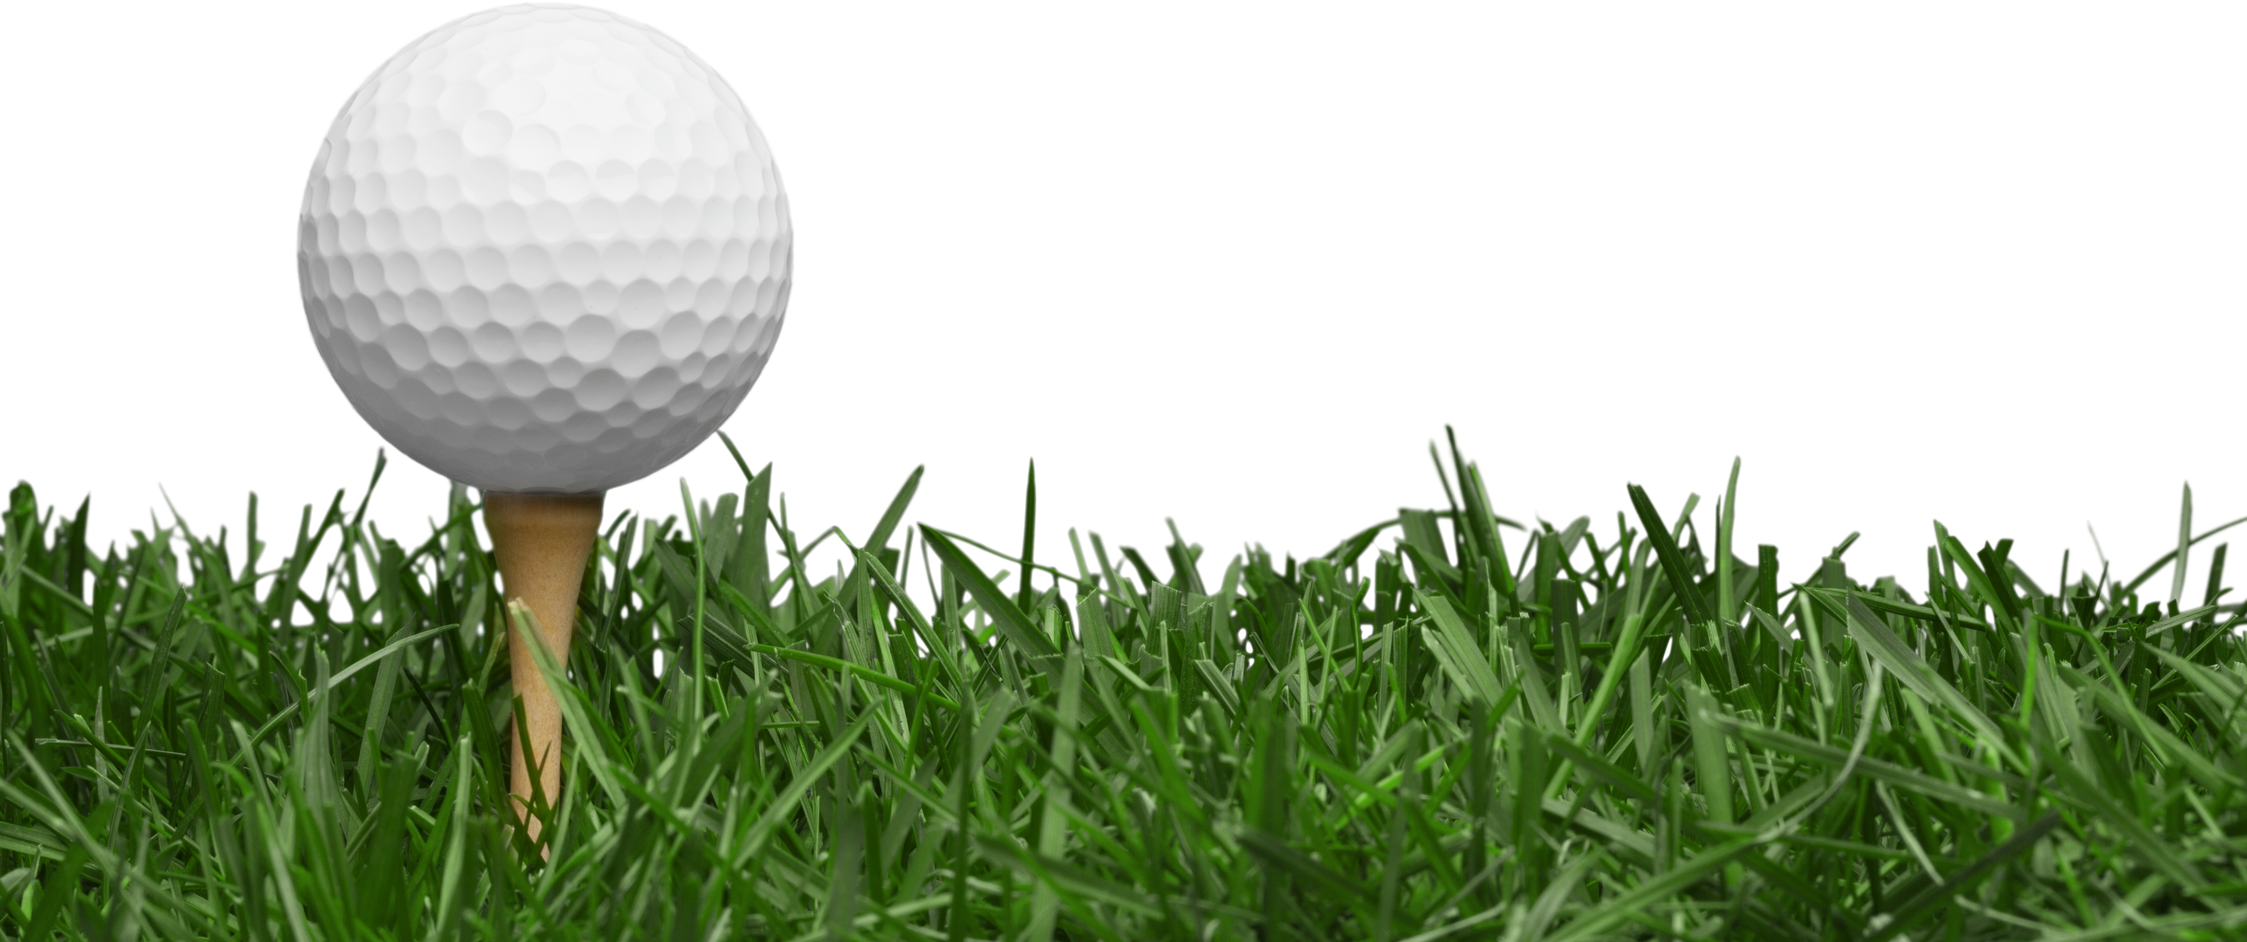 golf ball with a golf tee on a grass